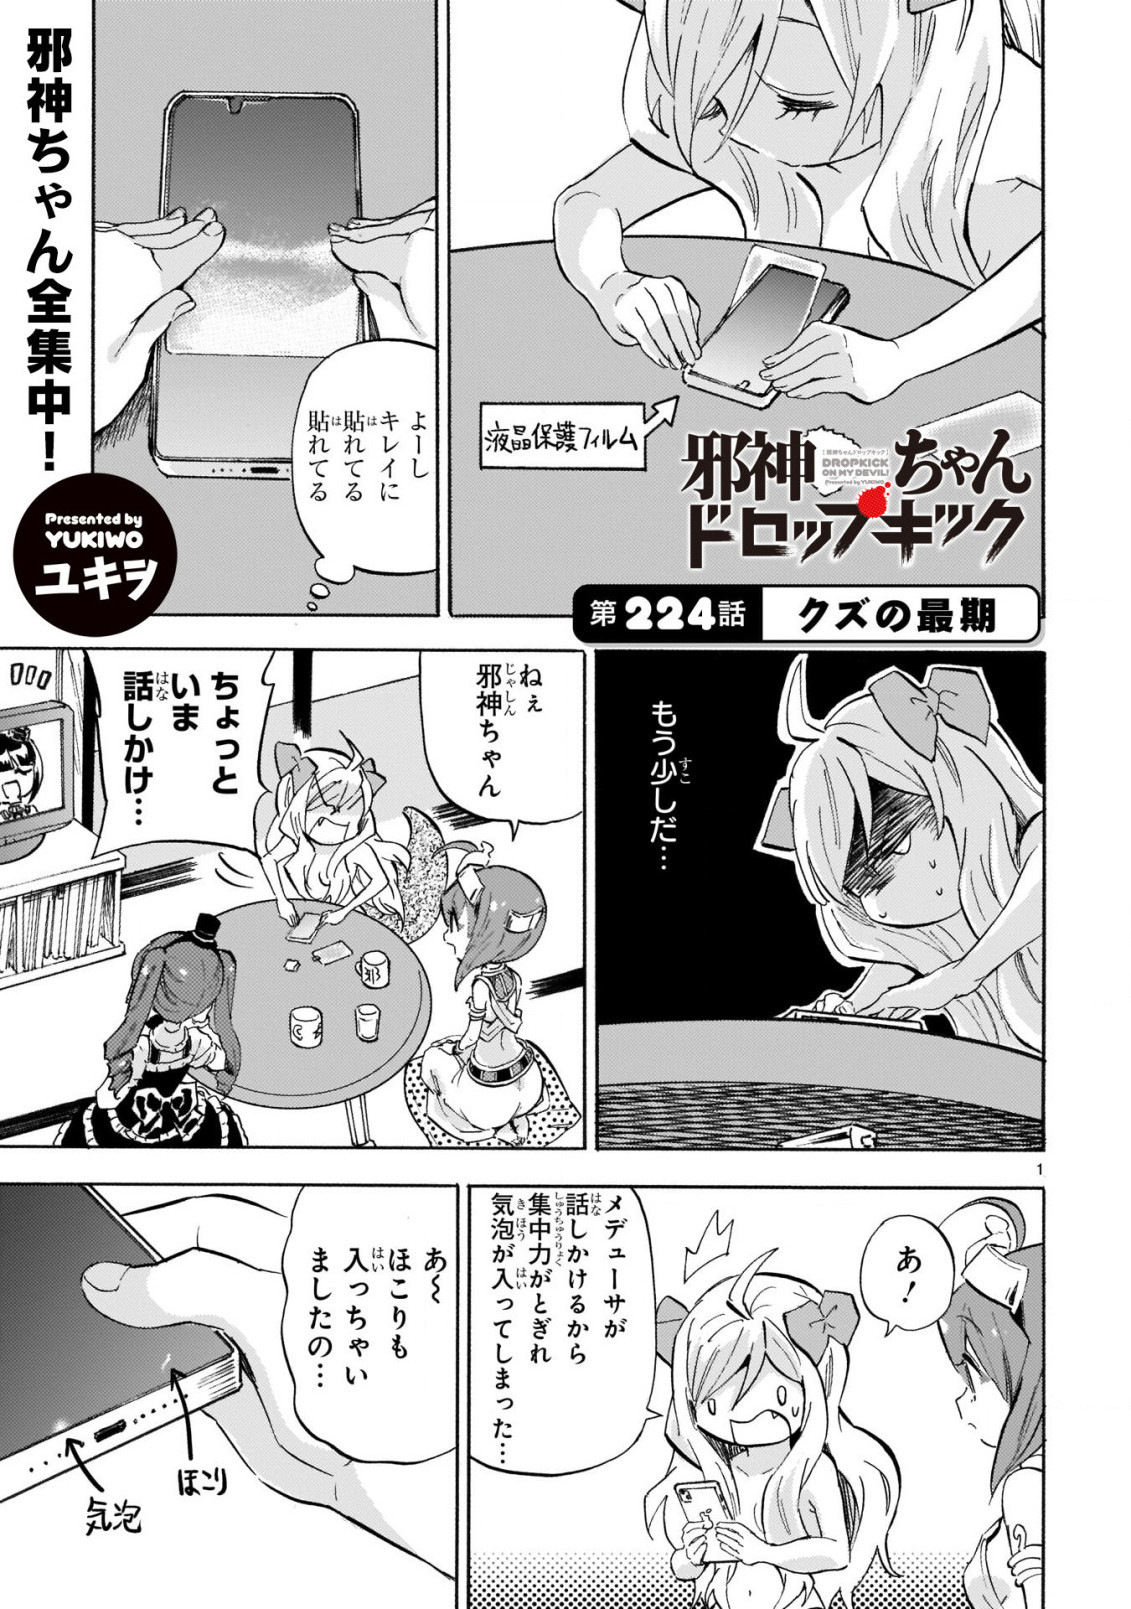 Jashin-chan Dropkick - Chapter 224 - Page 2